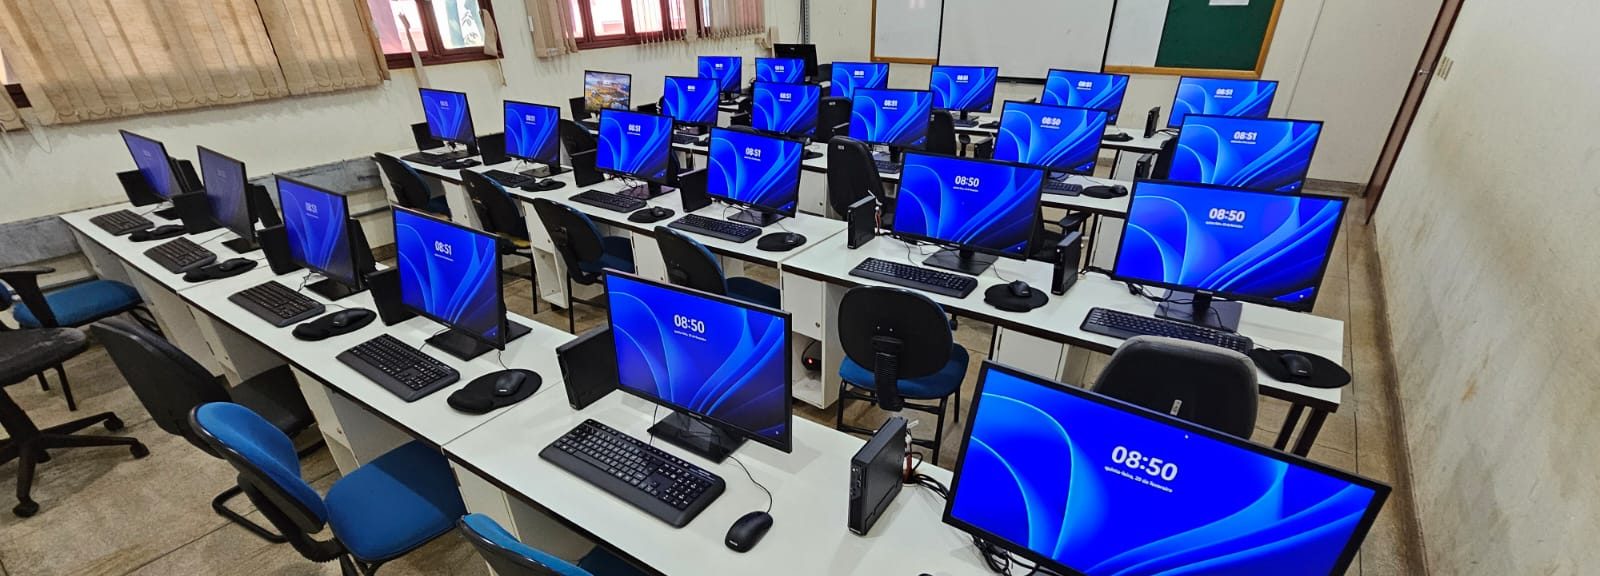 Novos computadores no laboratório de informática 3